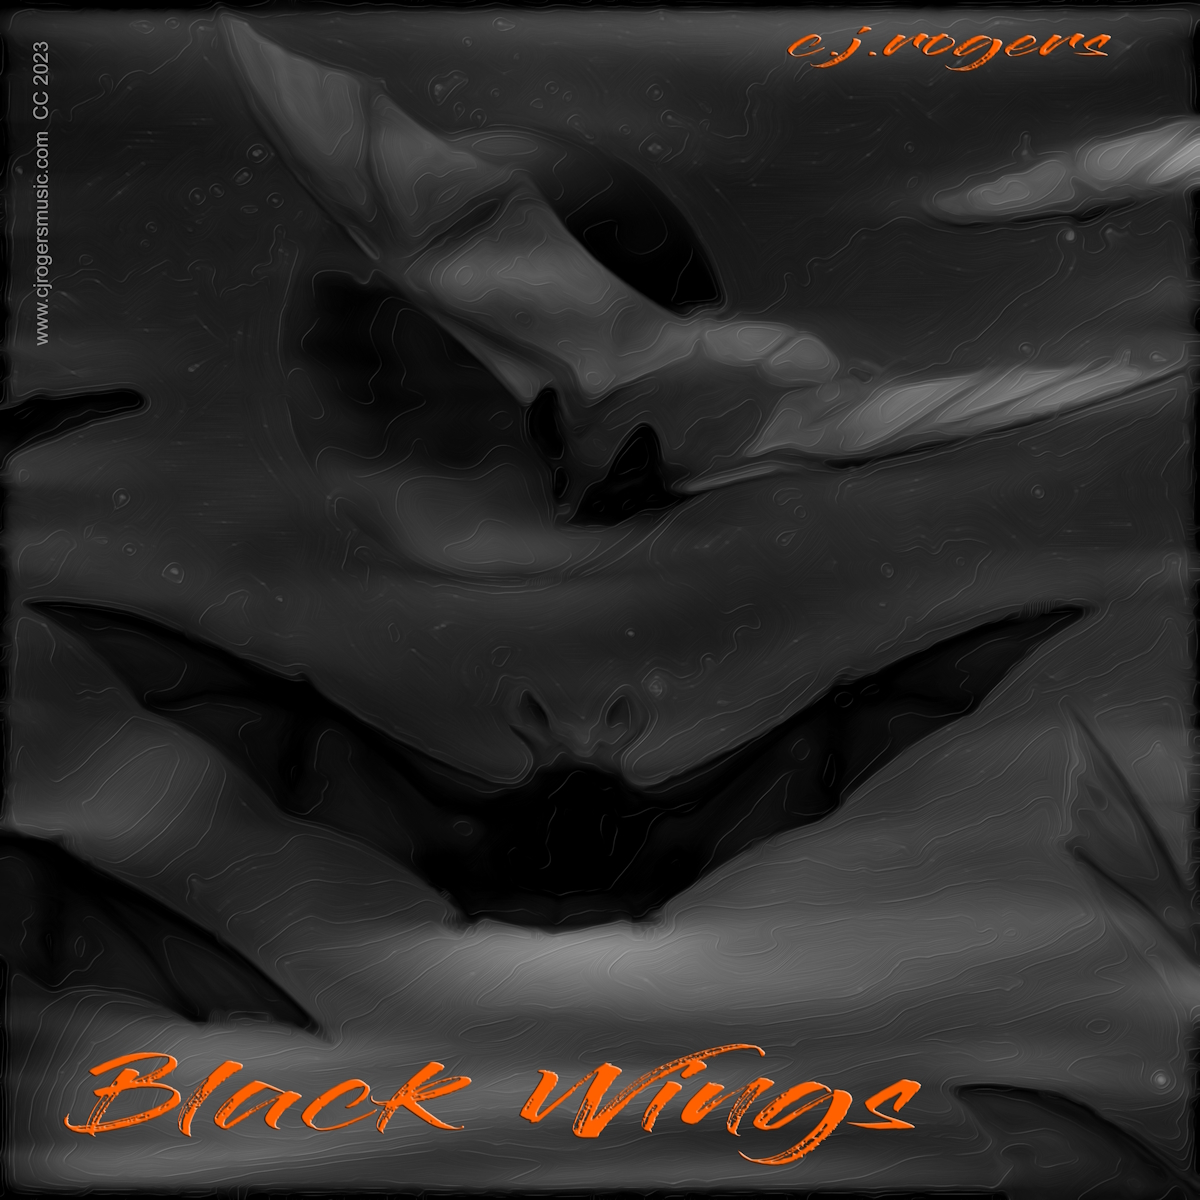 Black Wings - Fullsize Cover Art